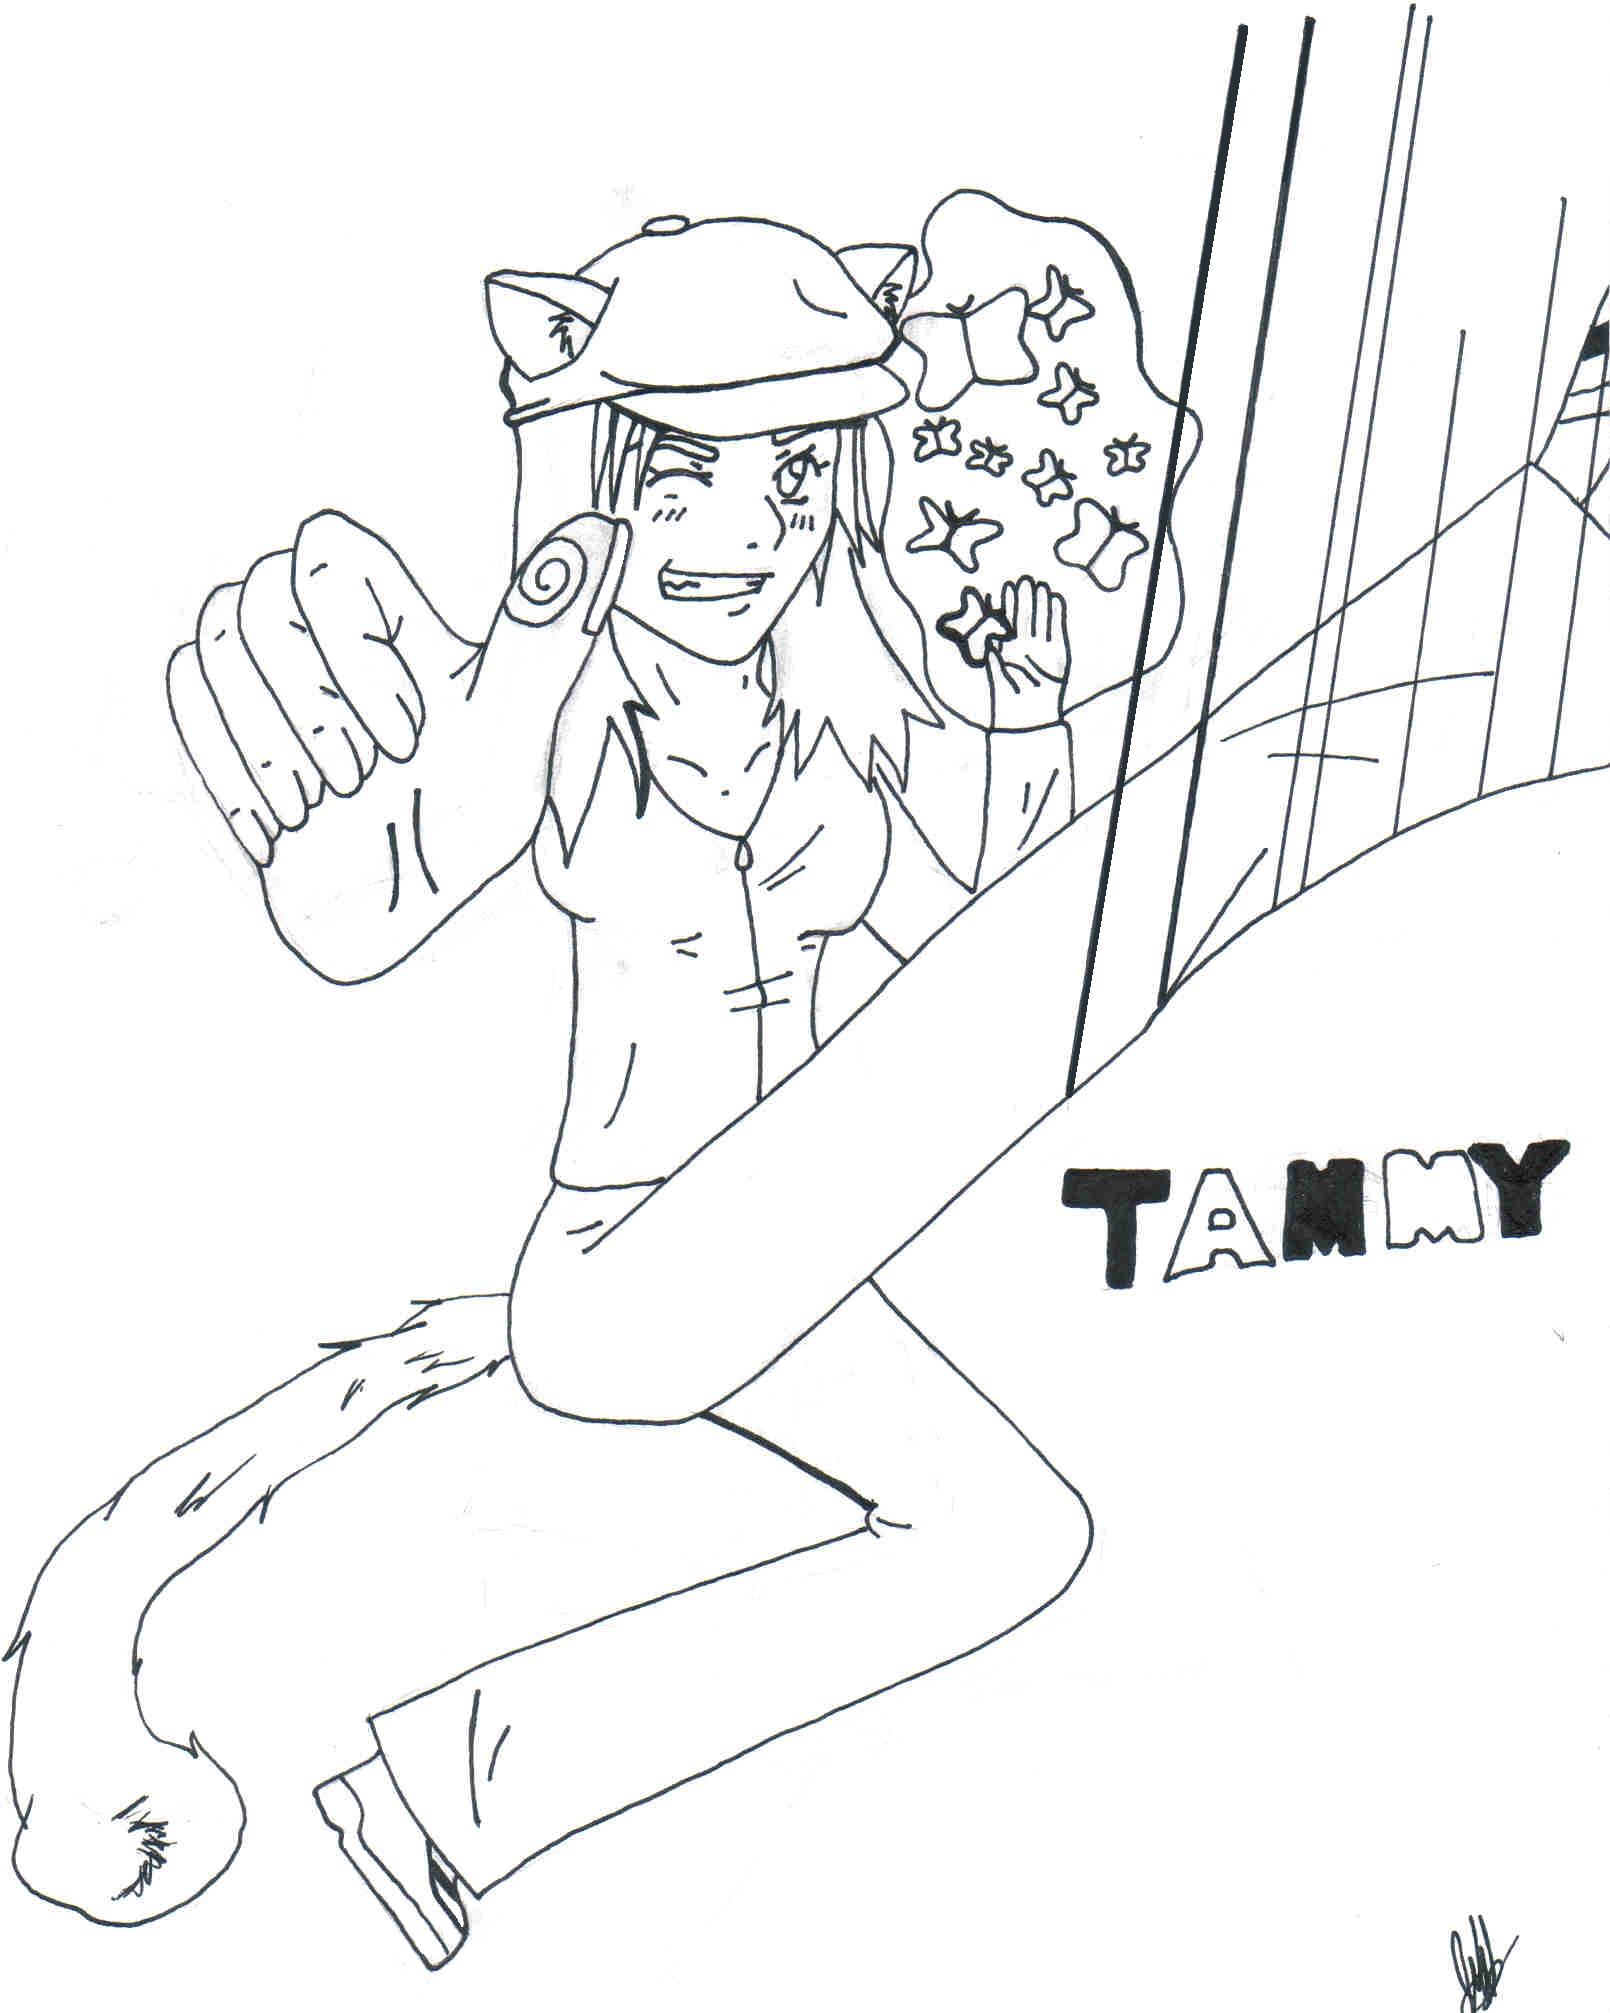 Tammy by lizardwd